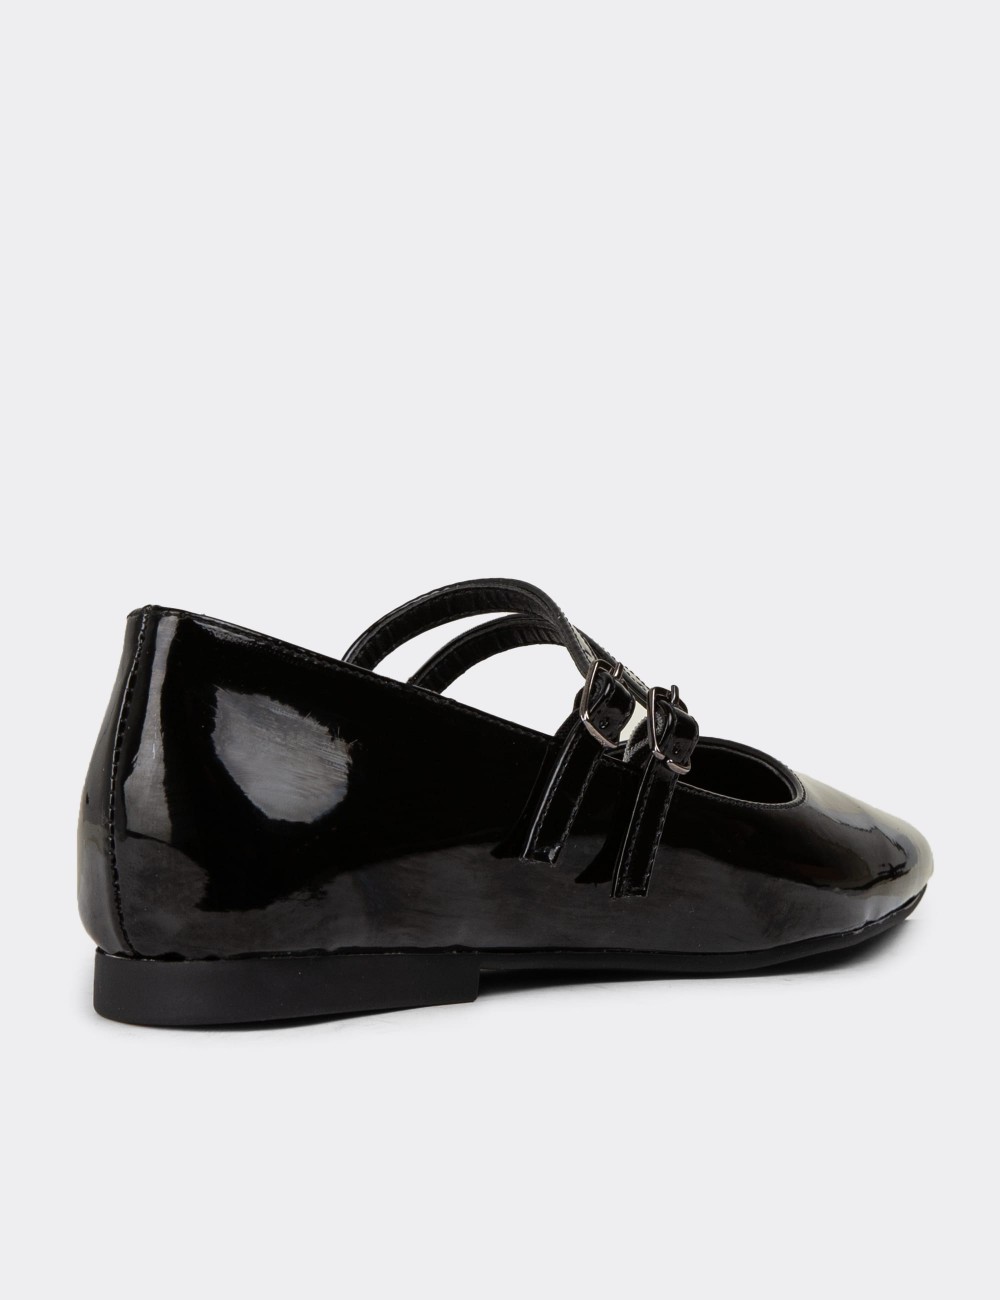 Black Patent Leather Loafers - K0110ZSYHC02